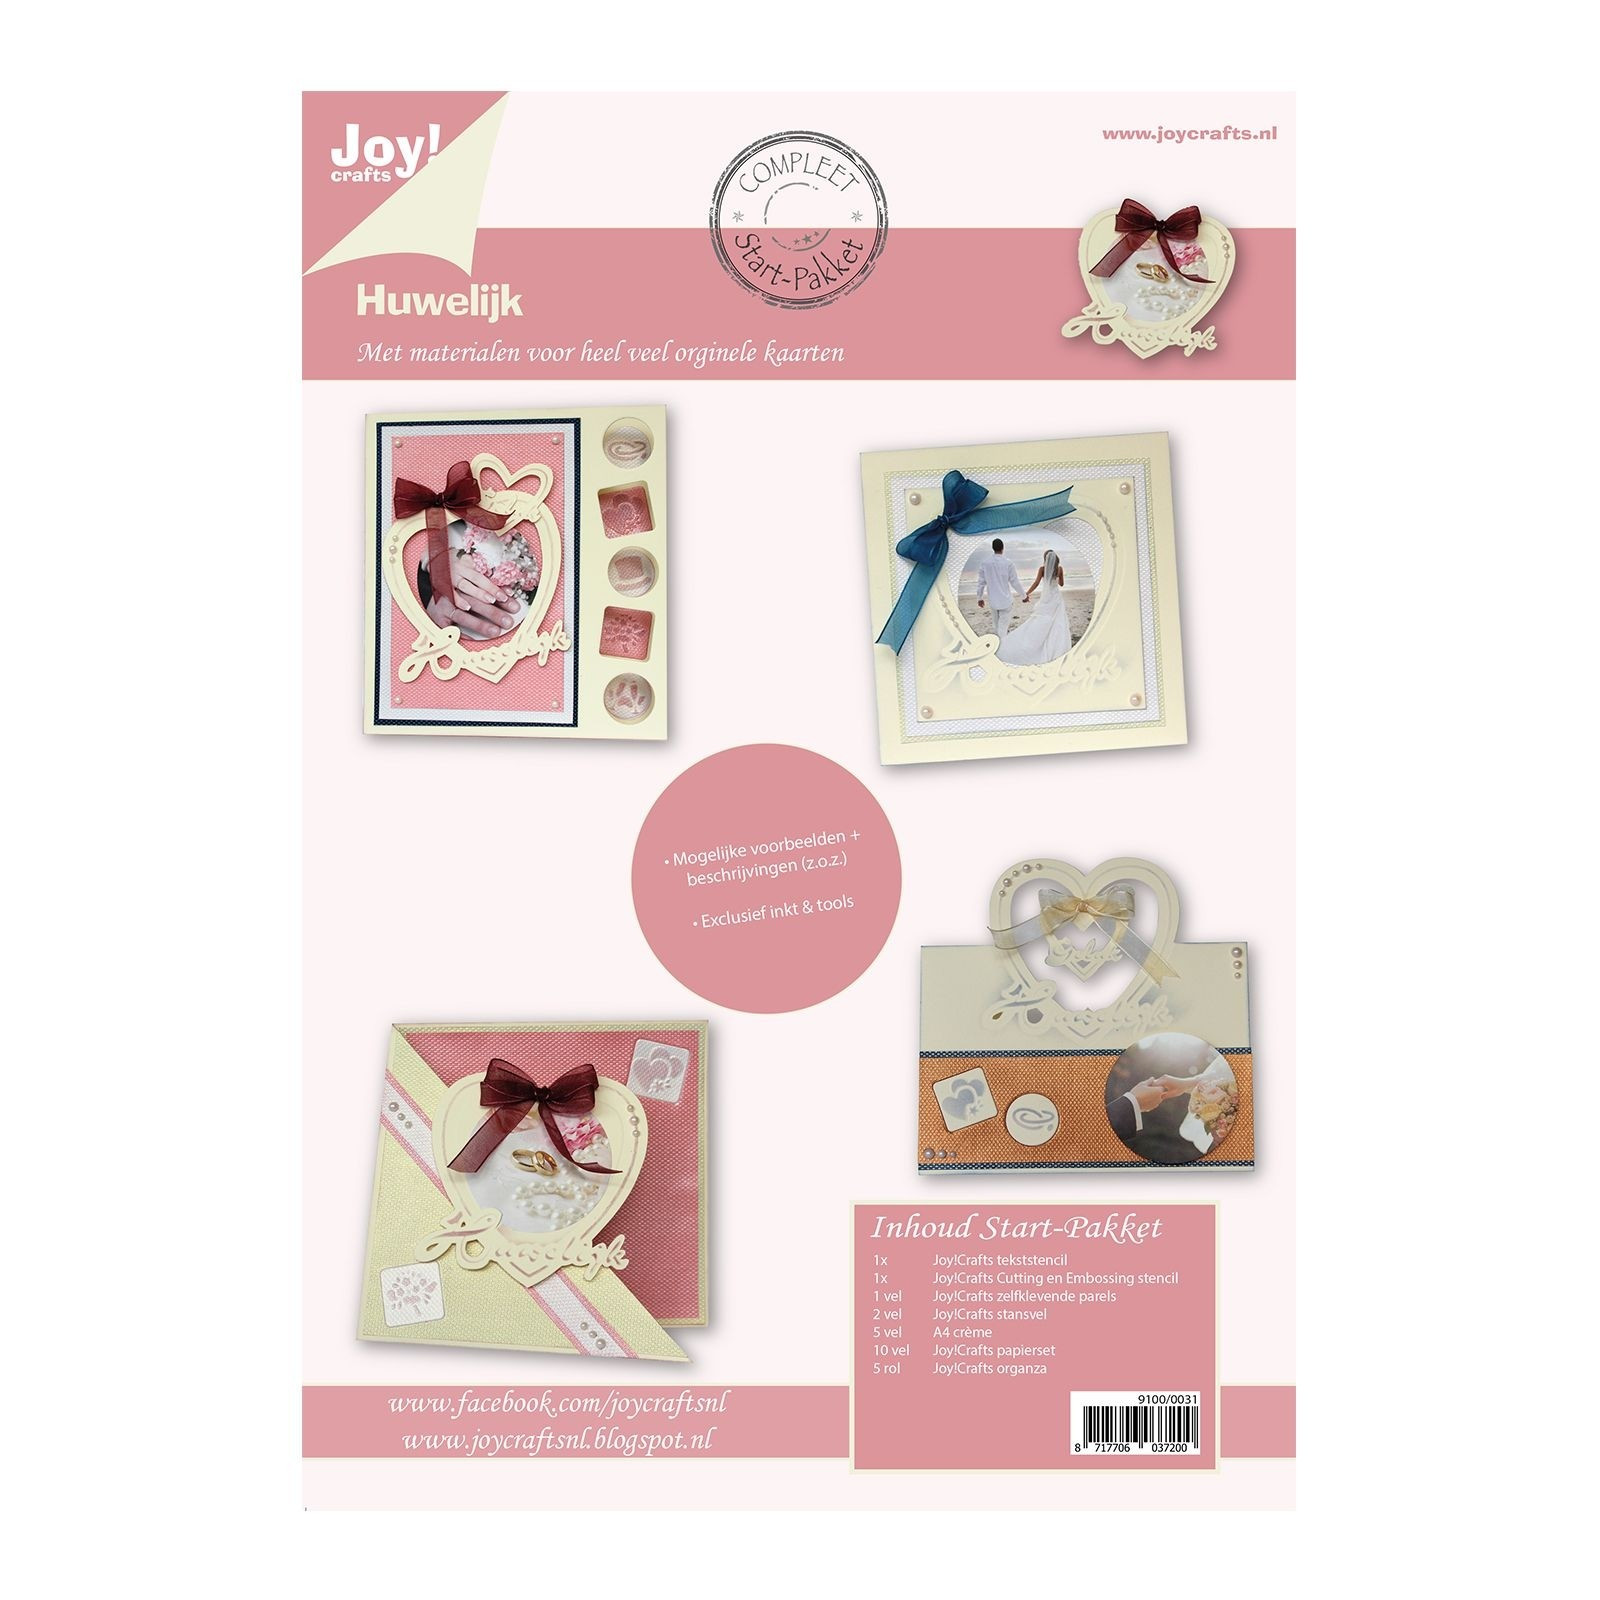 Joy!Crafts • Startpakket Nederlands "Huwelijk"